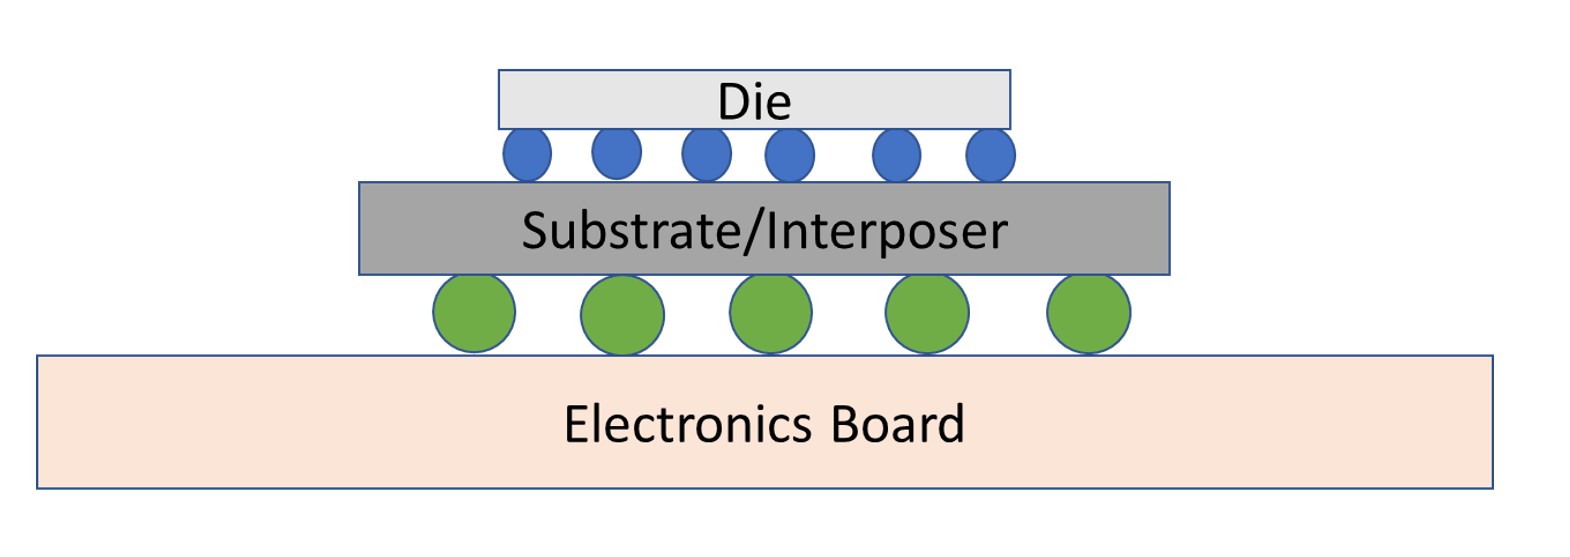 图 4：倒装芯片封装的概念图。来源：A. Meixner/半导体工程